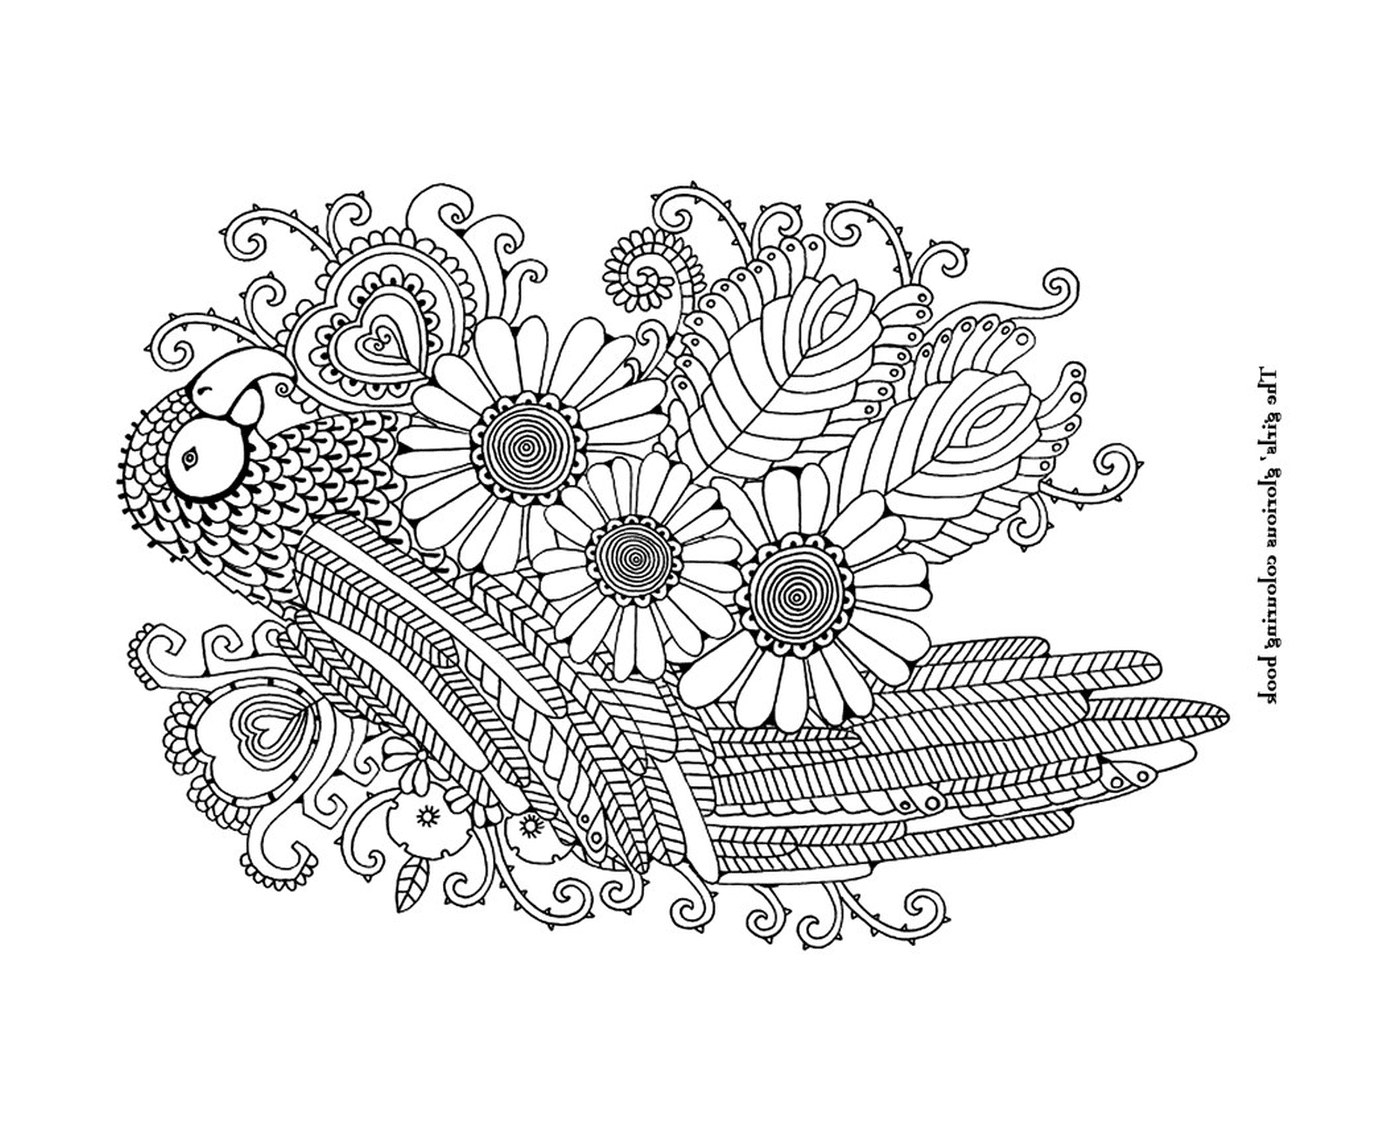  Eine Blumenarrangement mit Whirlpools 